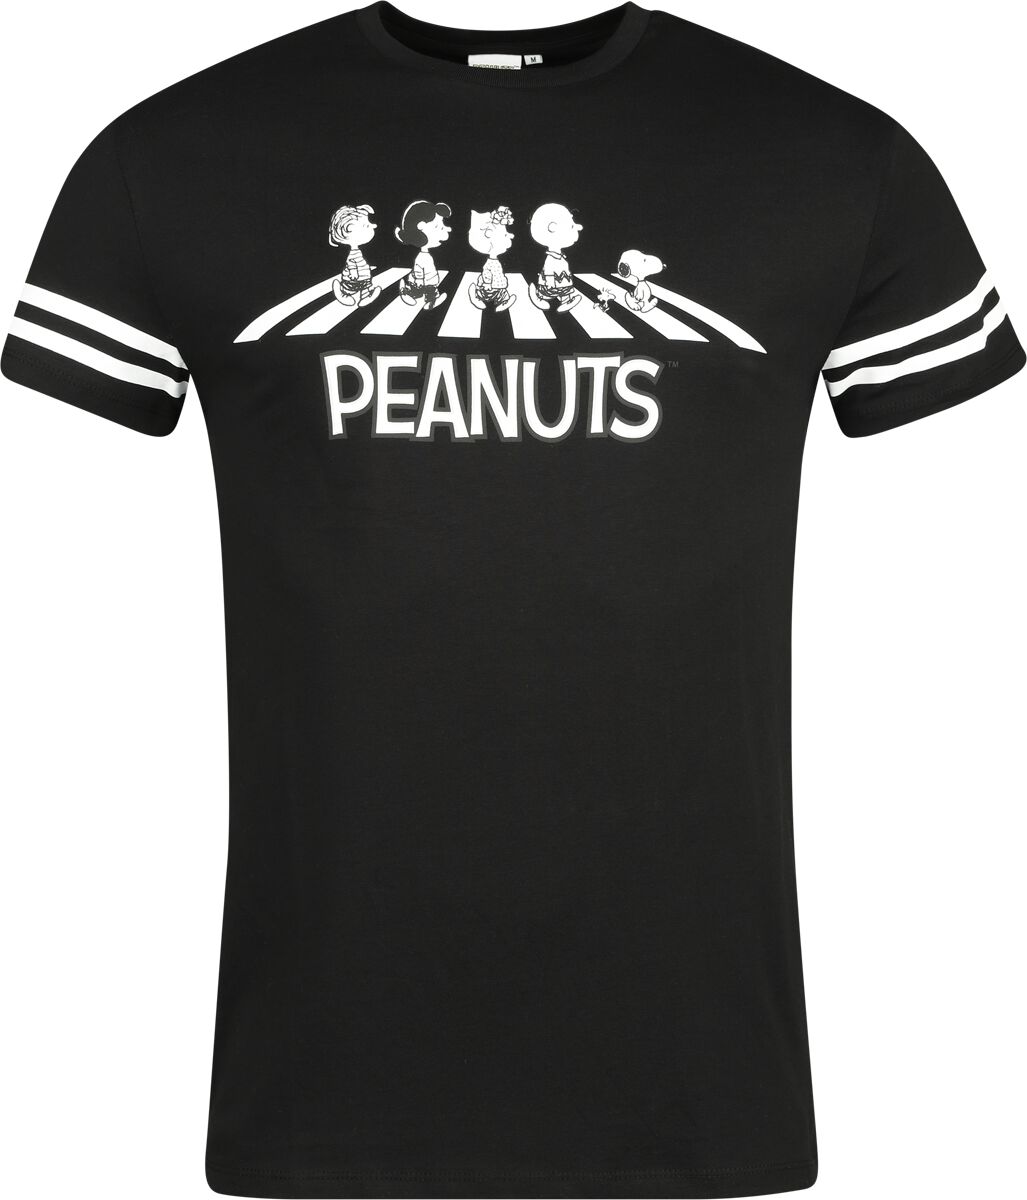 Peanuts T-Shirt - Walking Group - S bis 3XL - für Männer - Größe M - multicolor  - EMP exklusives Merchandise!